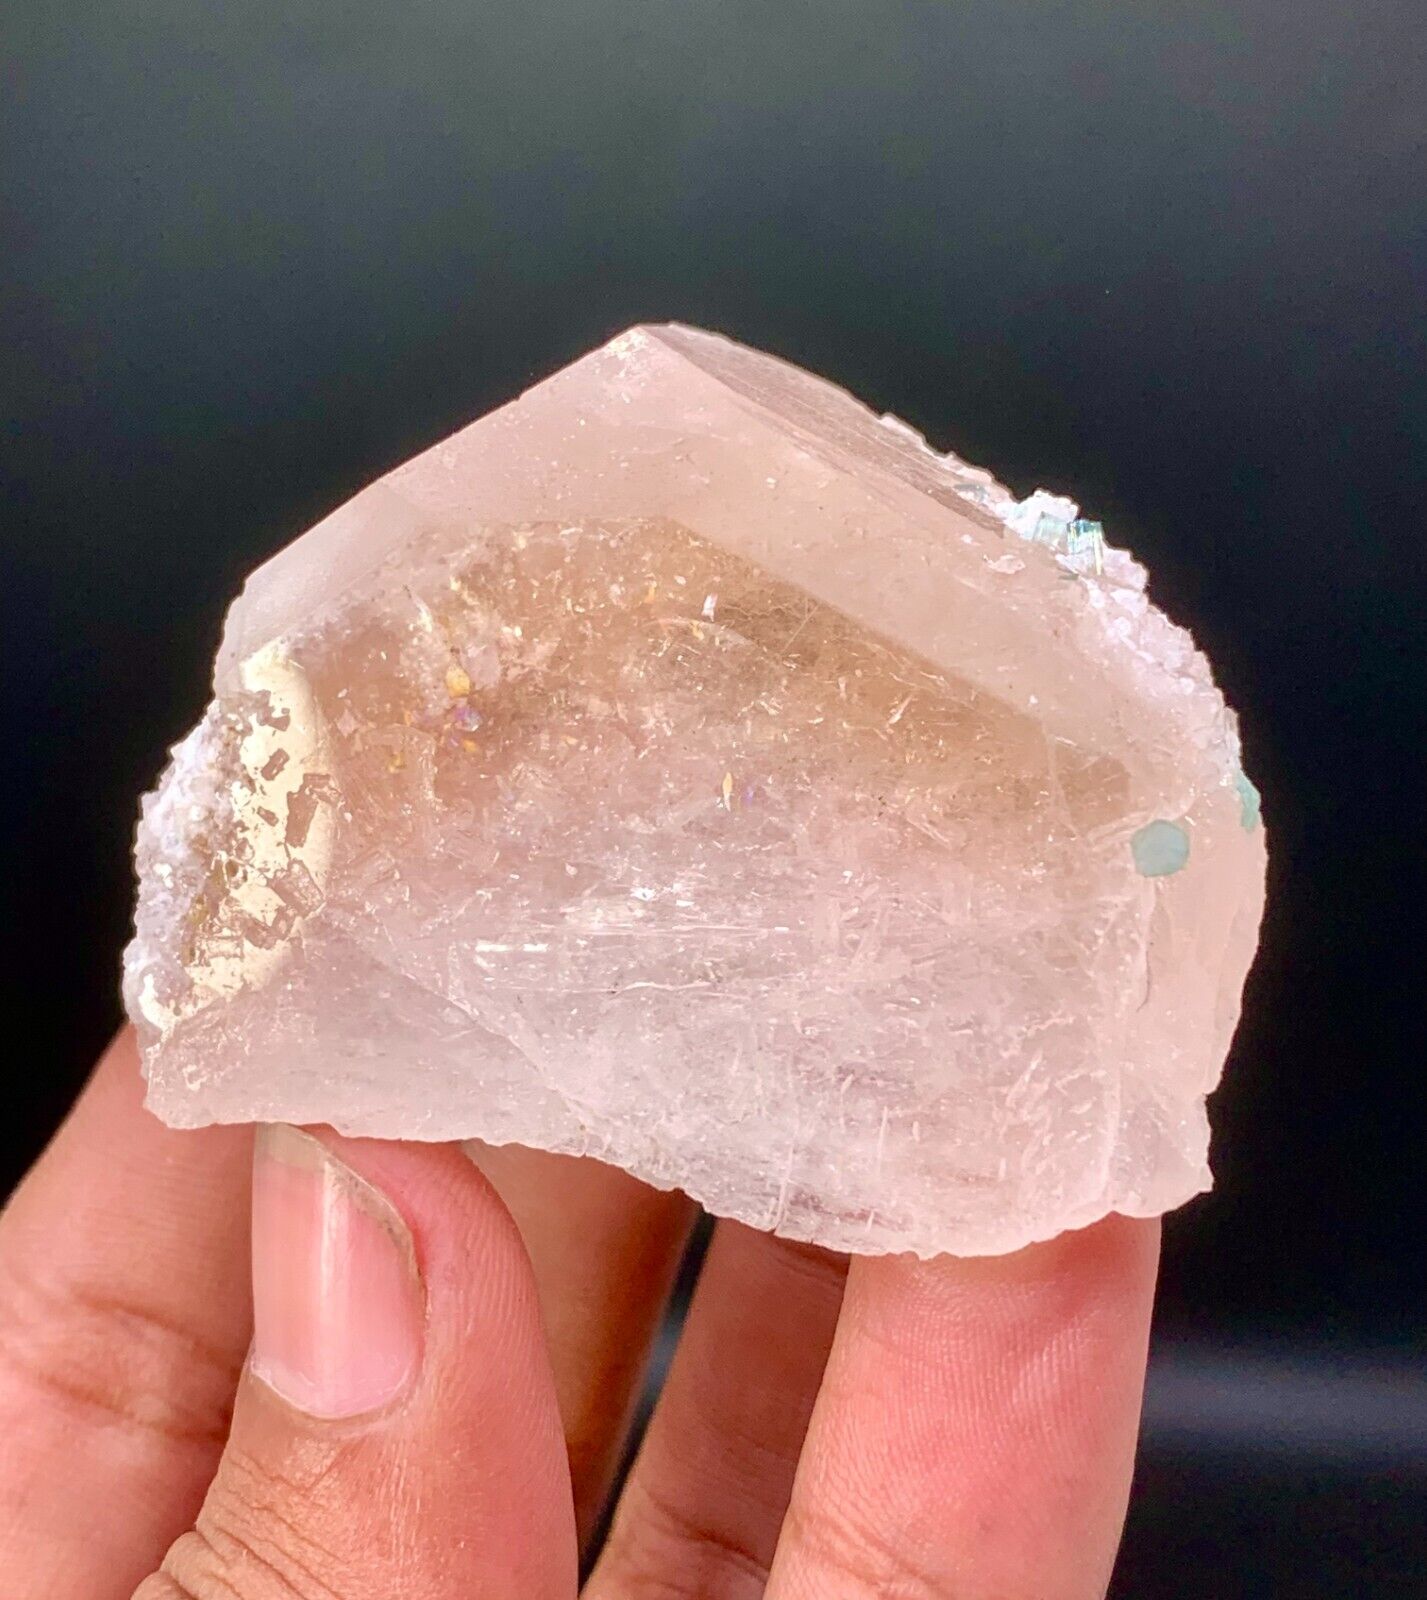 Undamaged Double Terminated Gemmy Pink Color Morganite crystal specimen @afghan.